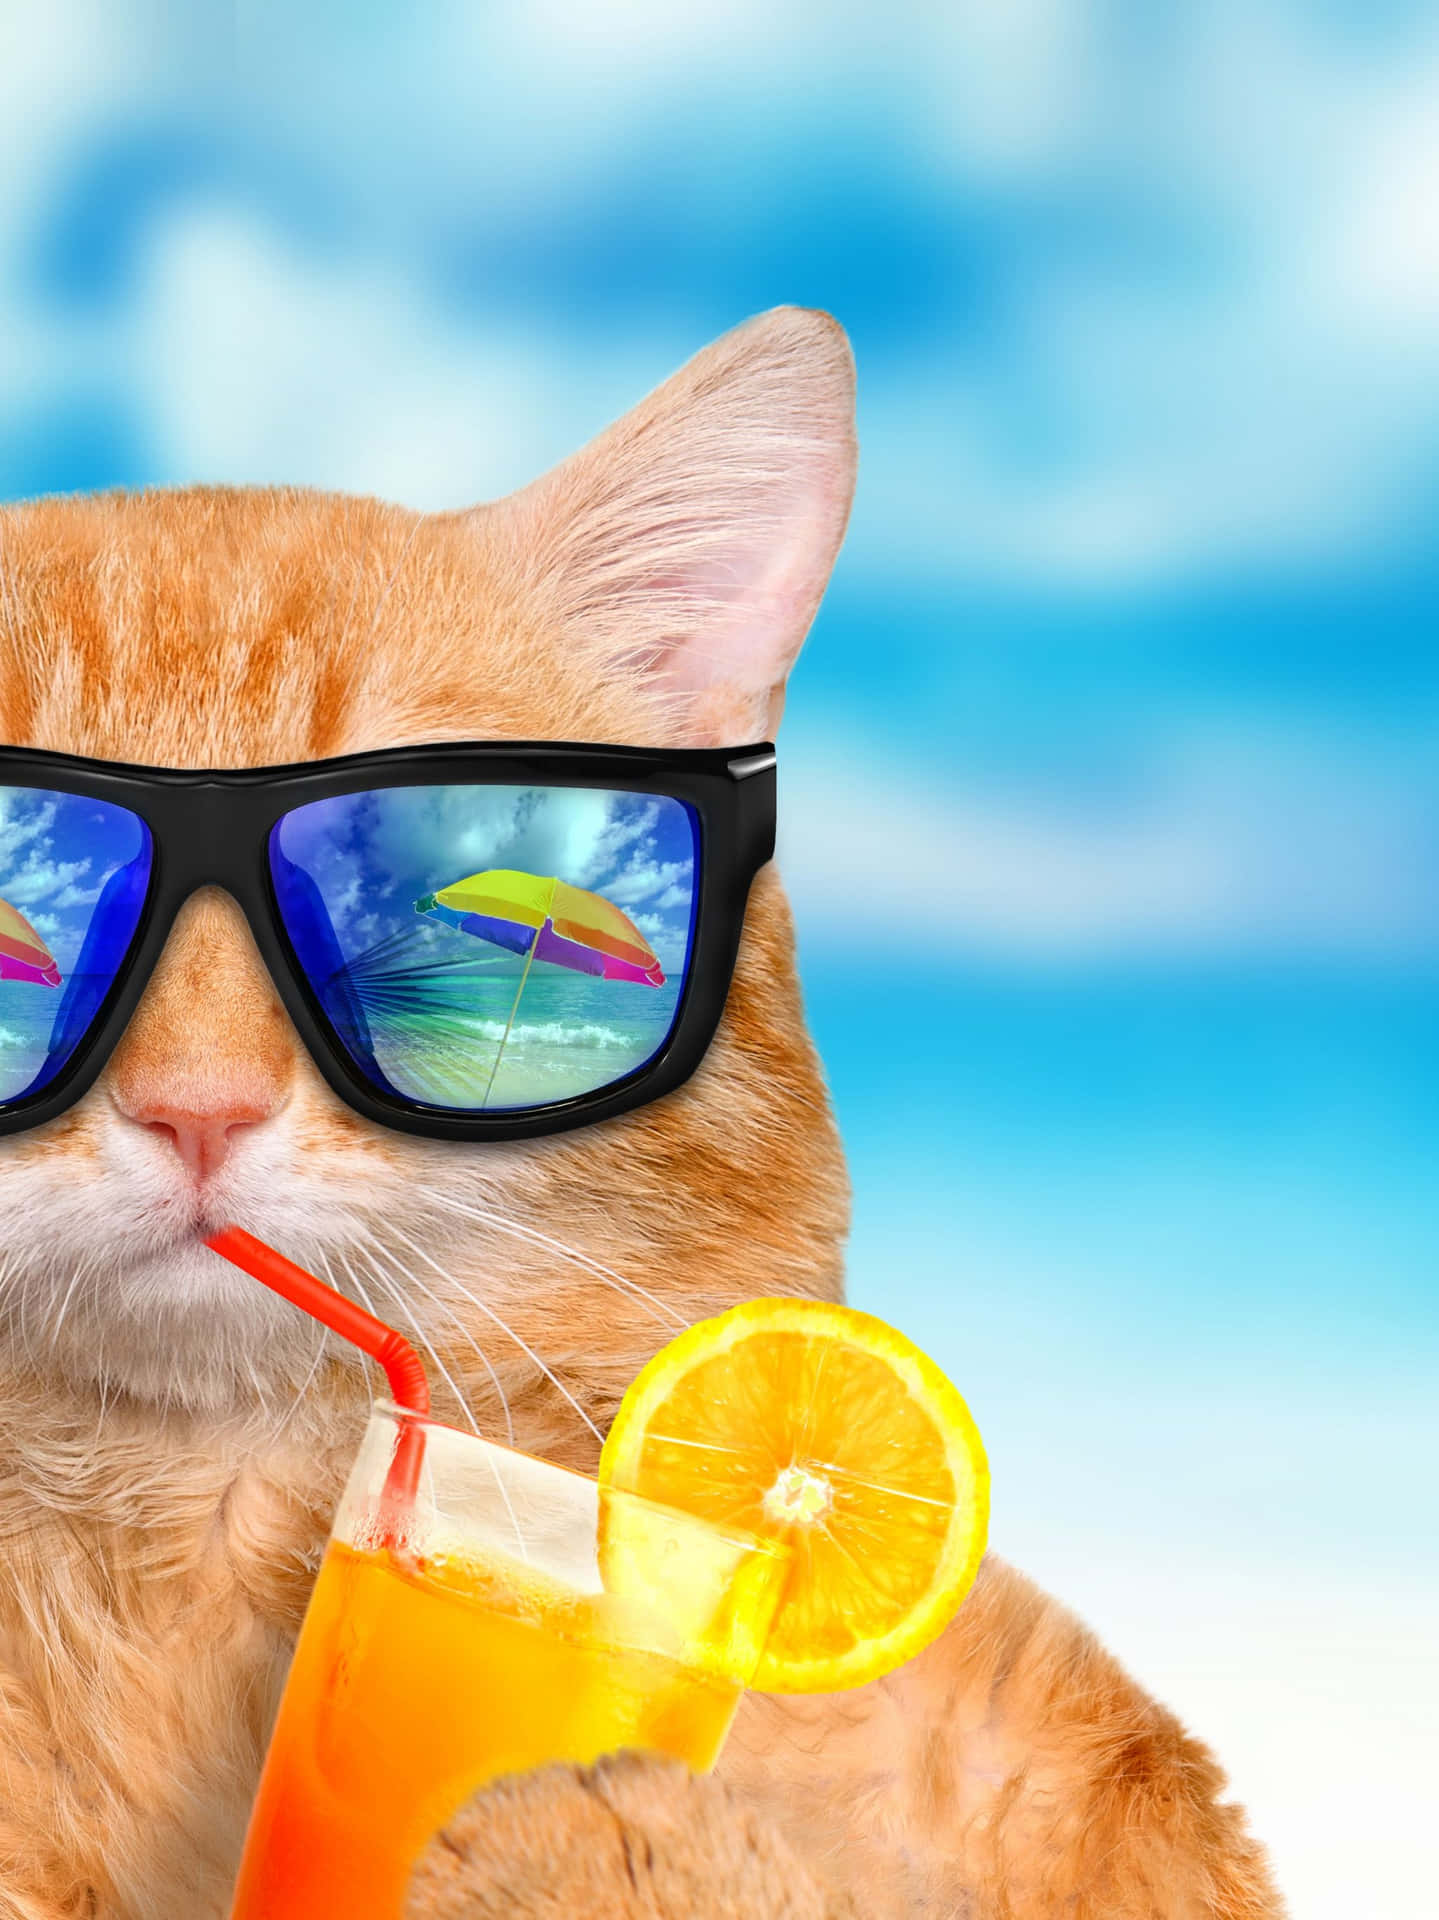 Summer Fun Cool Cat Wallpaper